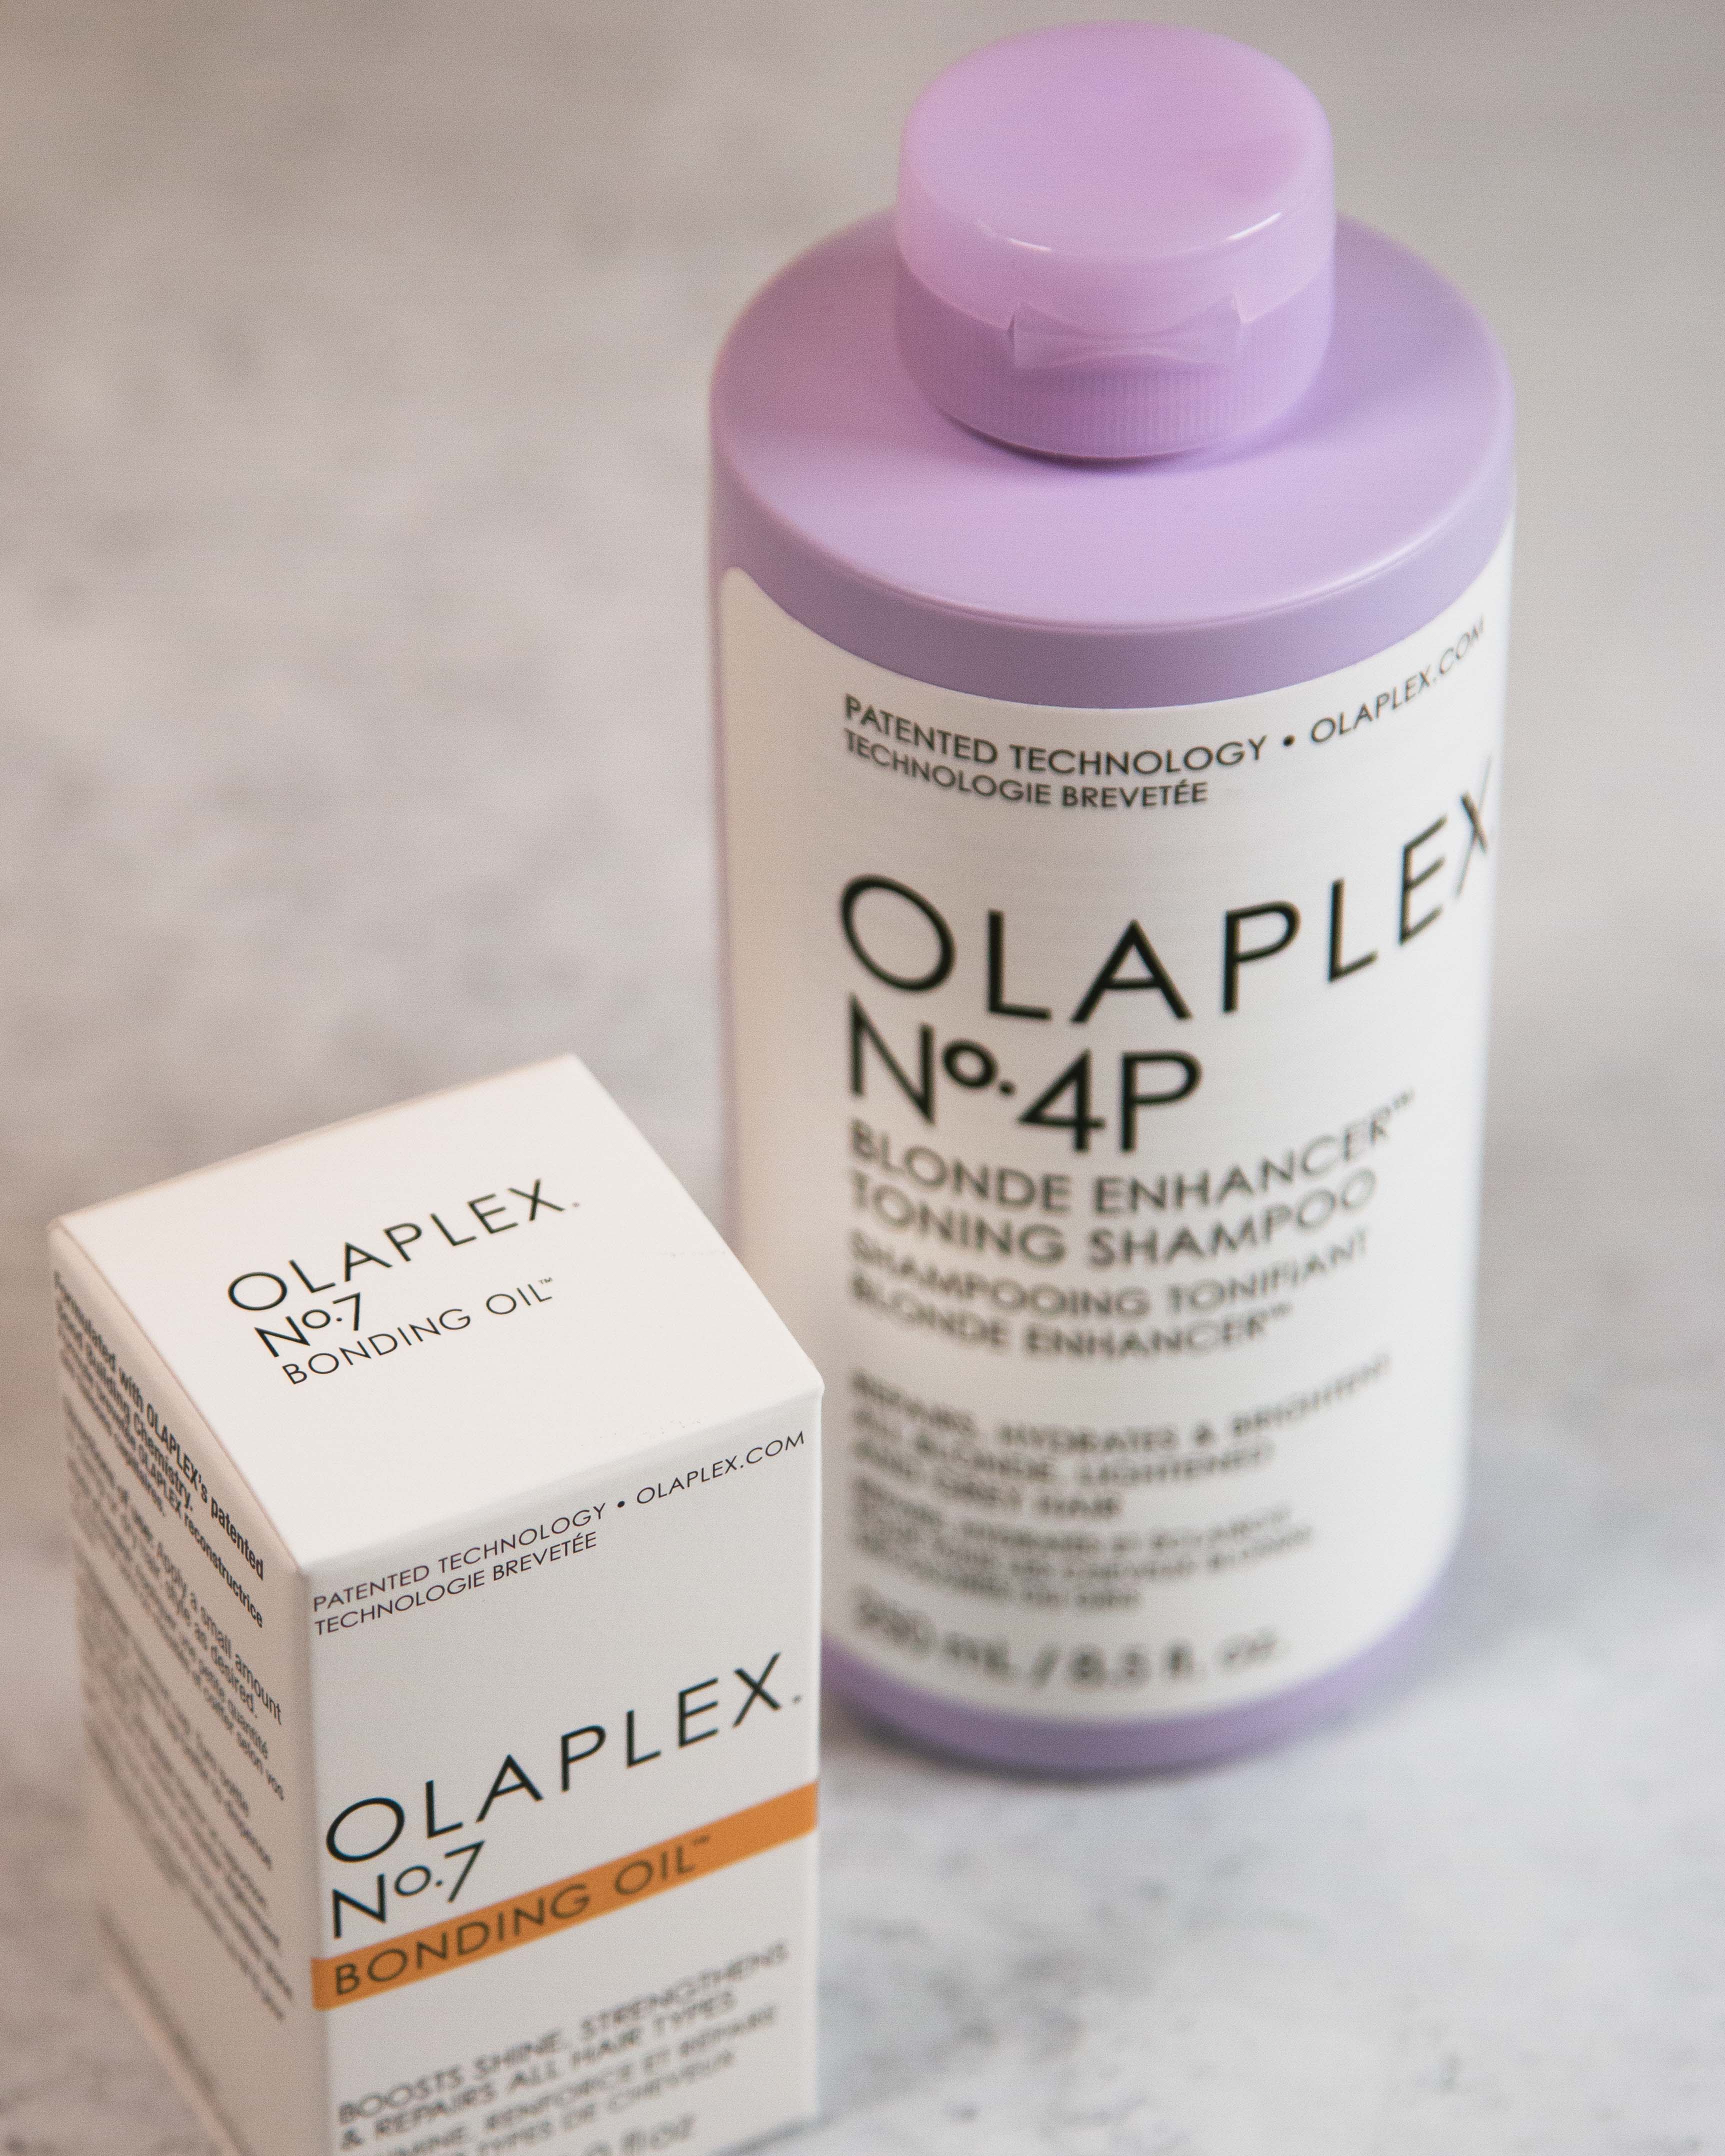 Comprar Tratamiento Olaplex 7